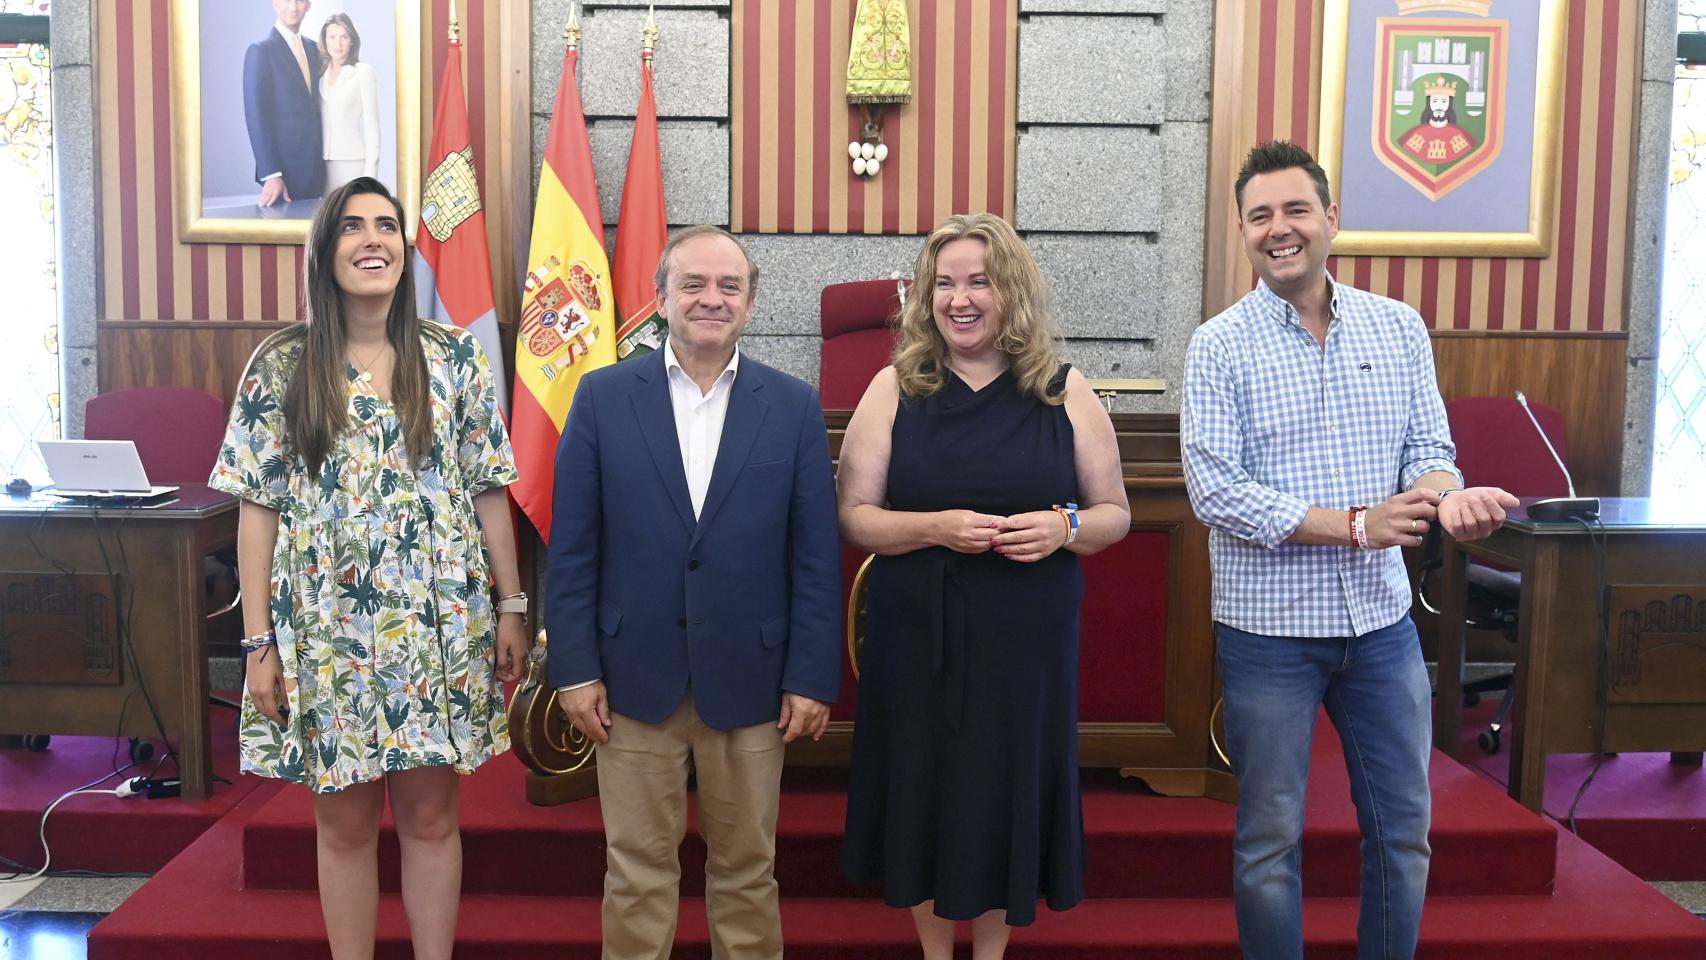 La alcaldesa de Burgos, Cristina Ayala Santamaría, acompañada de los portavoces de los grupos municipales, presenta la proposición conjunta que se elevará al Pleno extraordinario de infraestructuras.